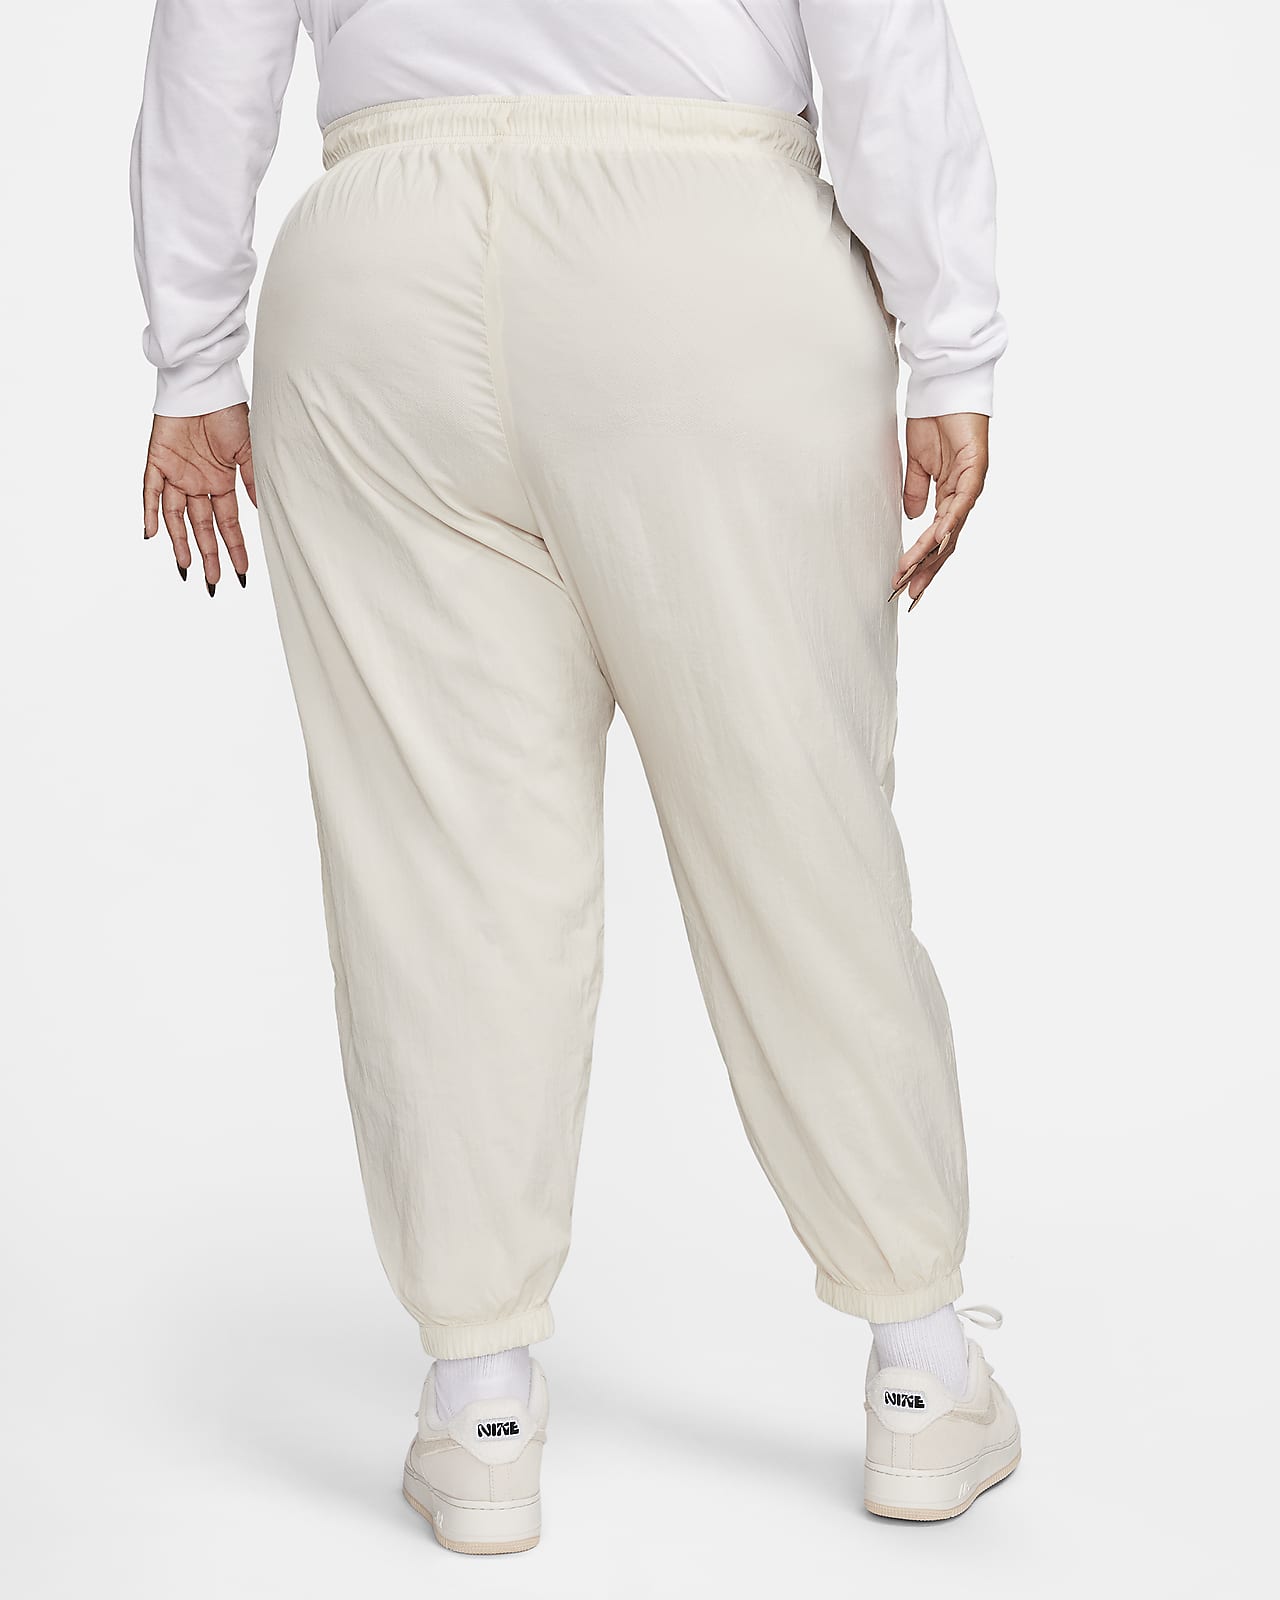 Sportswear Pants Women\'s Nike Mid-Rise (Plus Size). Essential